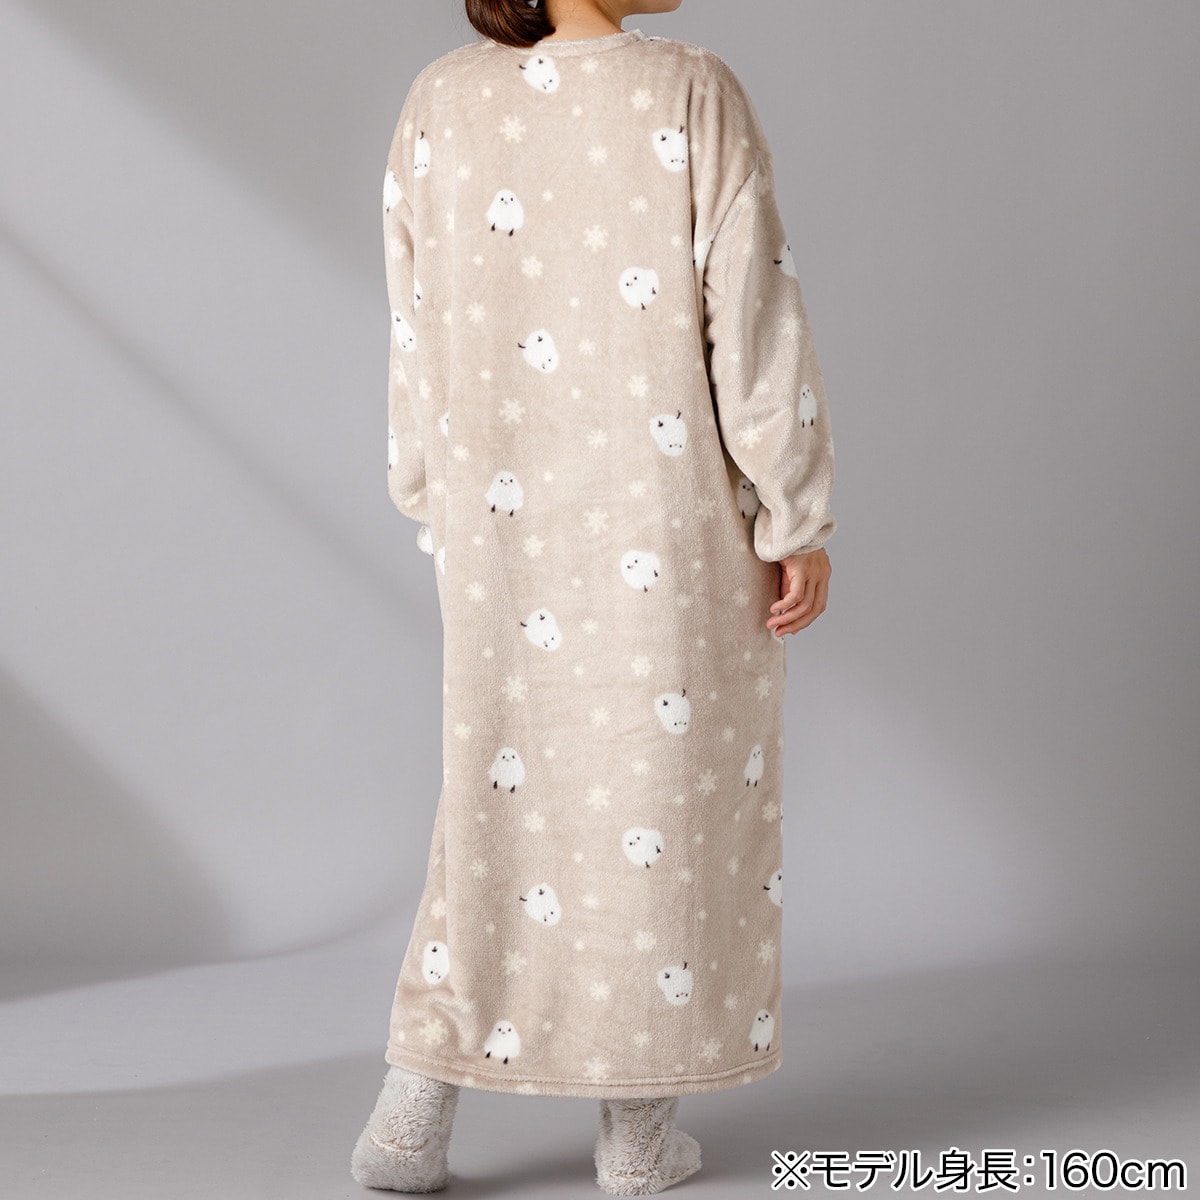 【デコホーム商品】着る毛布(Nウォーム シマエナガMO KM02 120)   【1年保証】